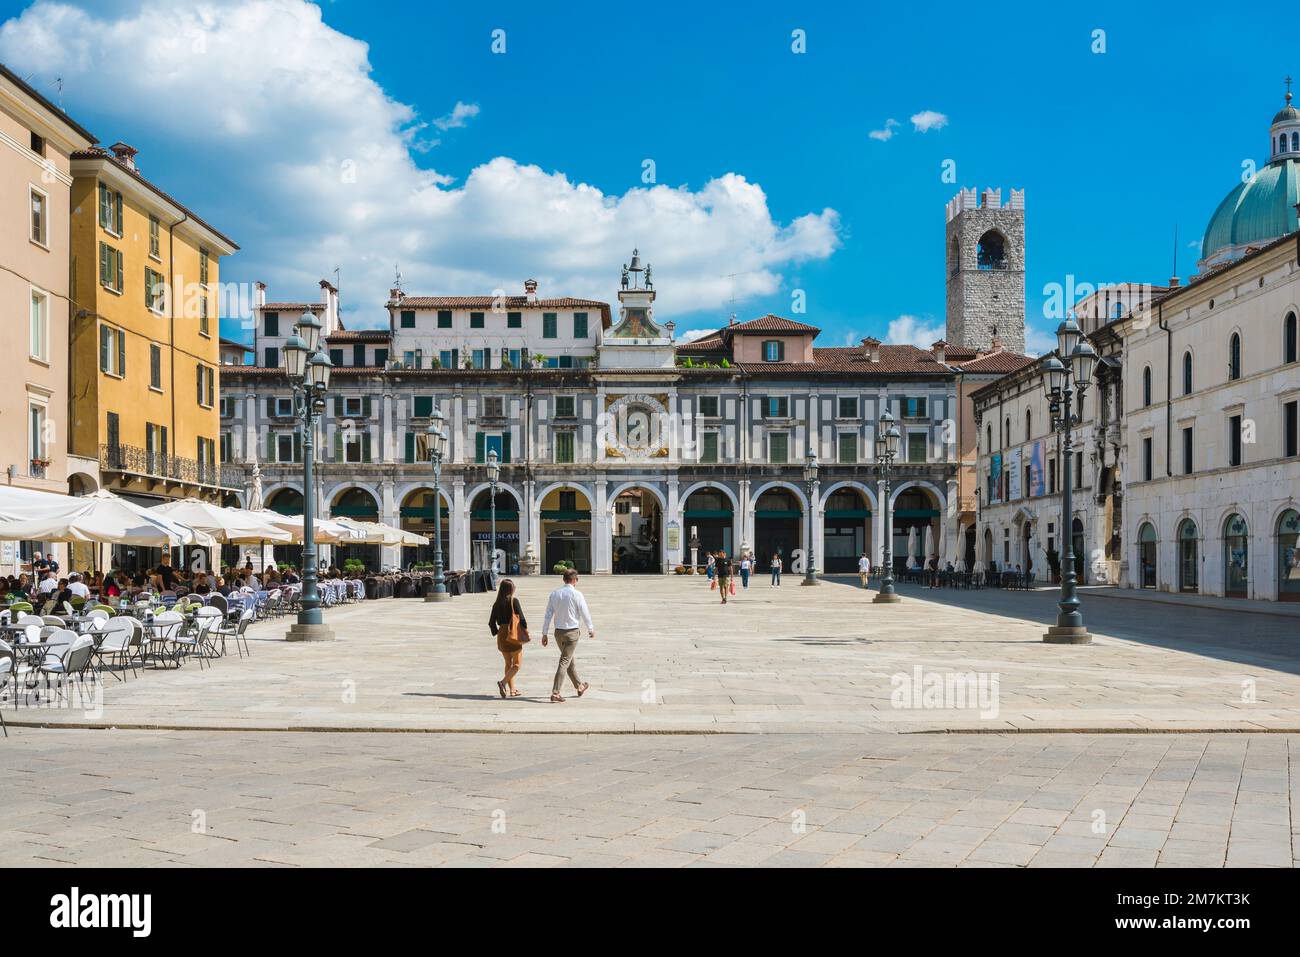 Brescia Italien, sehen Sie im Sommer Renaissance-Gebäude auf der Piazza della Loggia im historischen Zentrum der Stadt Brescia, Lombardei, Italien Stockfoto